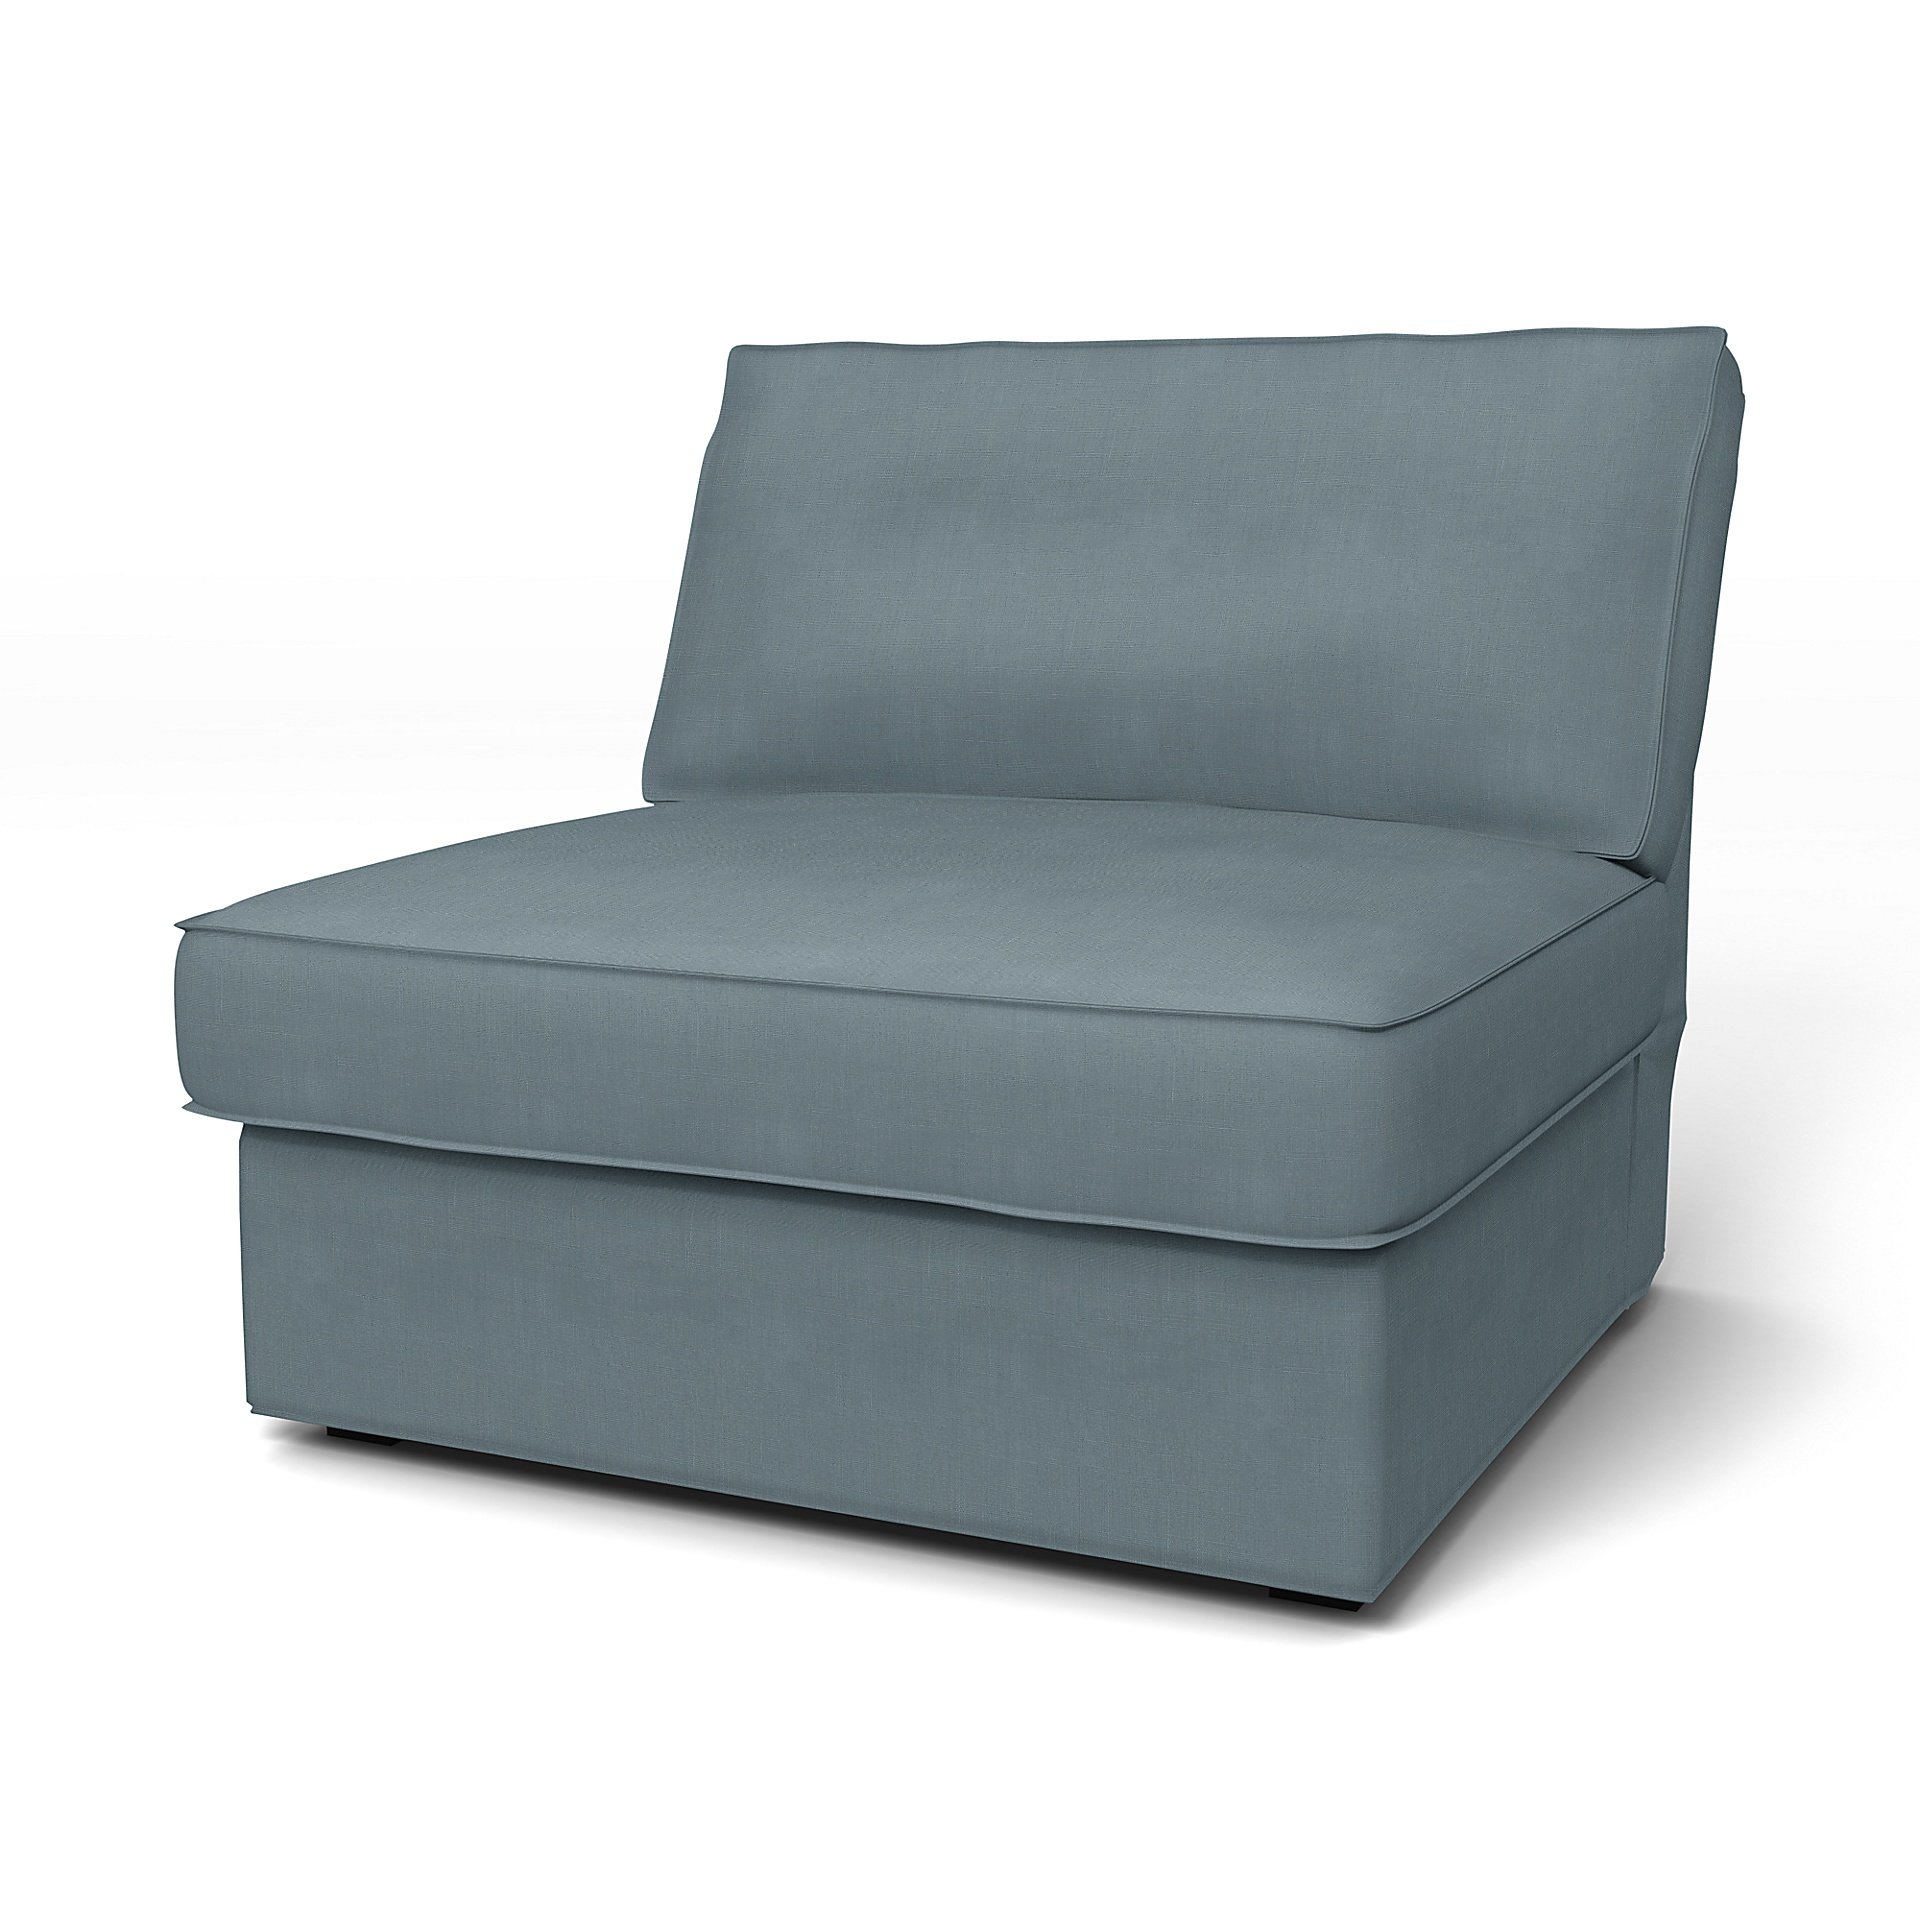 IKEA - Kivik 1 Seater Chair Cover, Dusk, Linen - Bemz